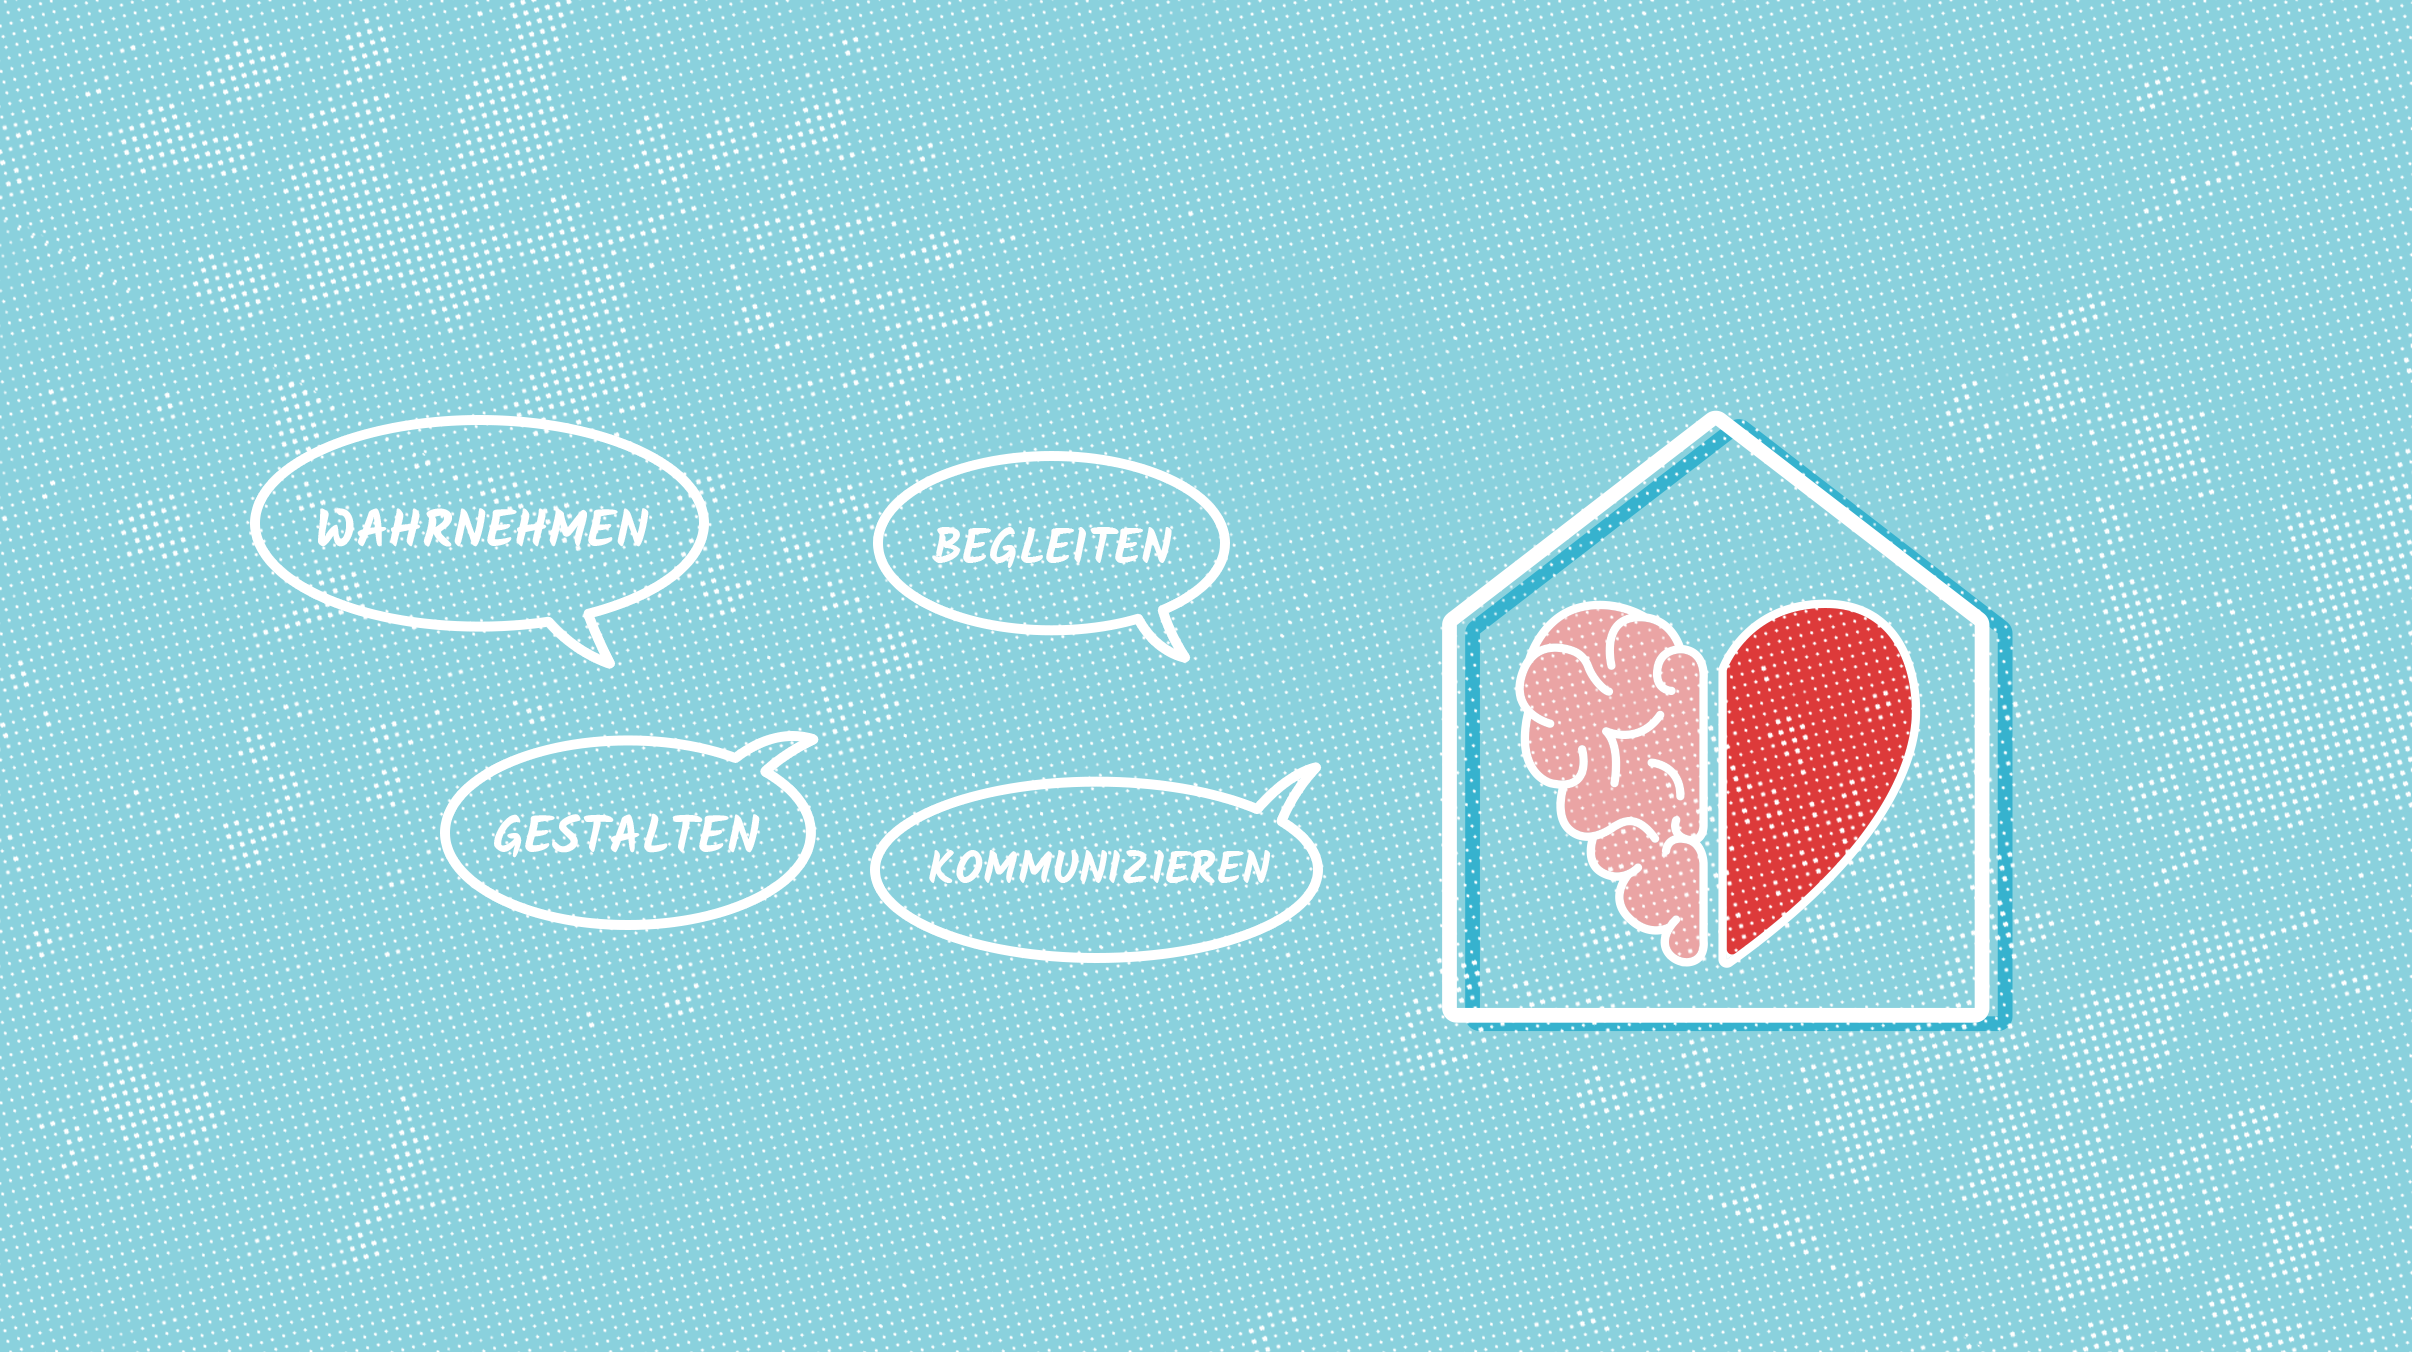 Sprechblasen auf der linken Seite einer Skizze eines Hauses mit einem Herz in der Mitte